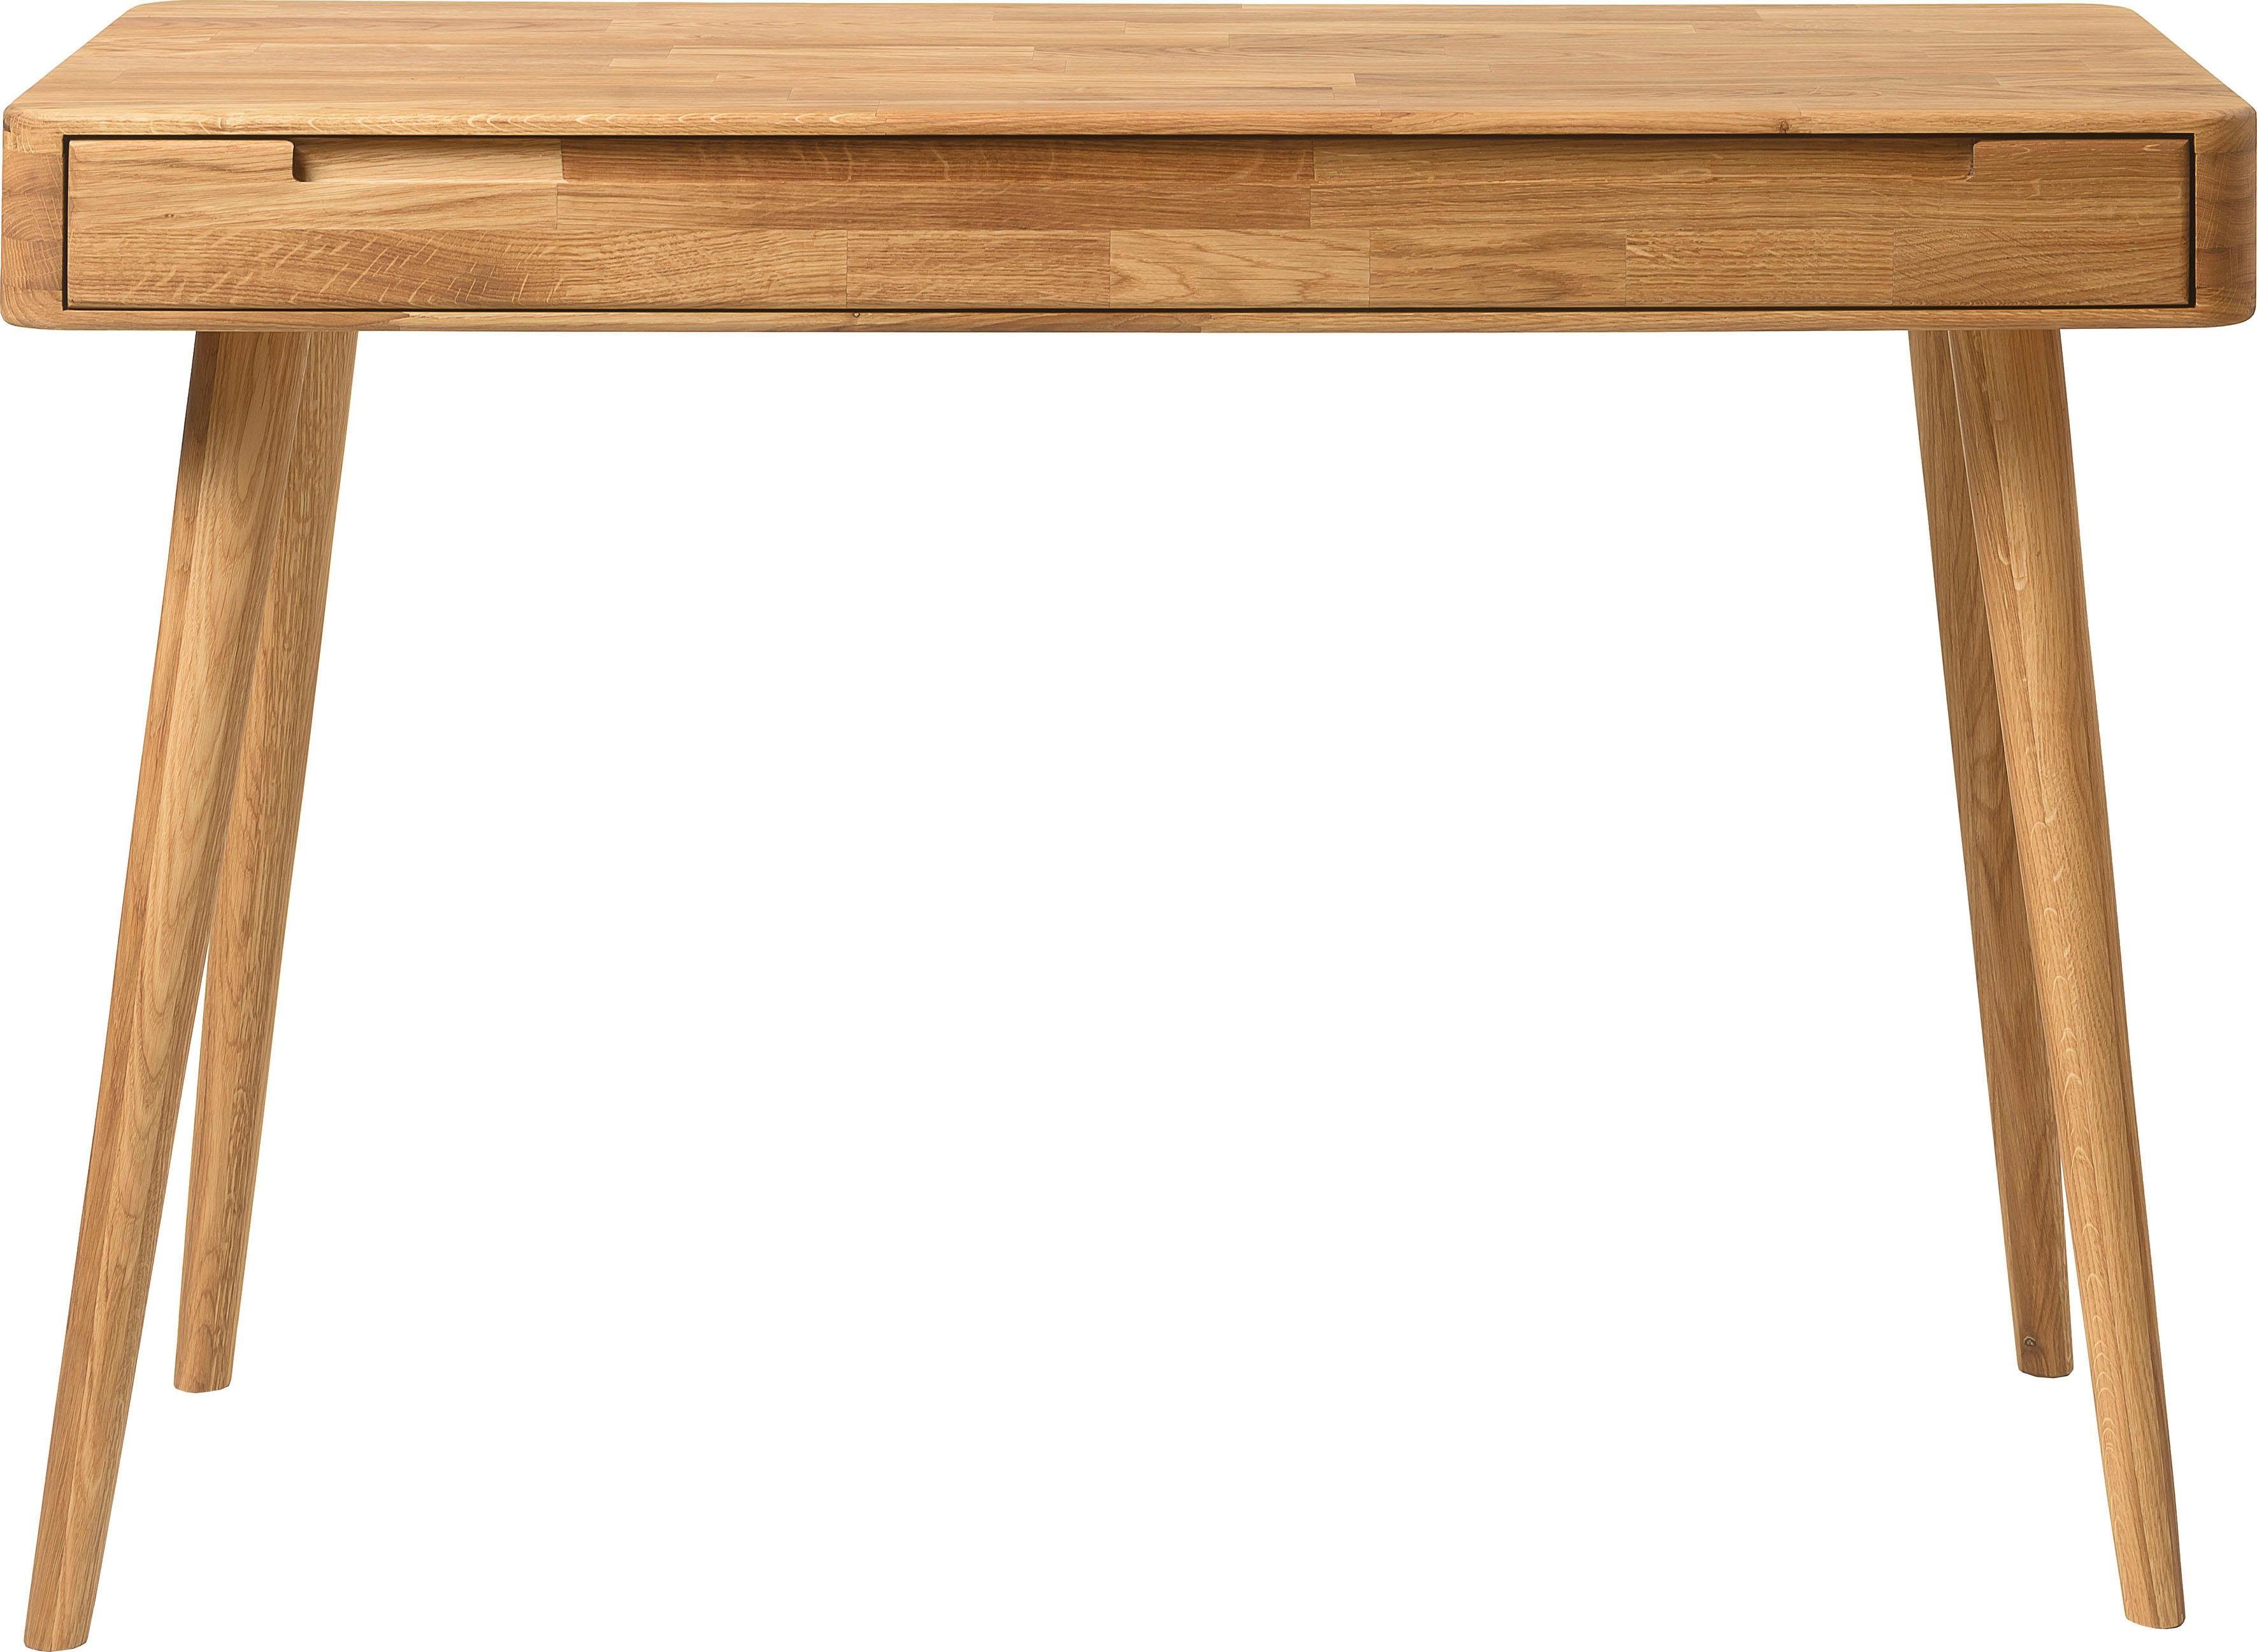 Home affaire Schreibtisch Scandi, aus Eichenholz, mit vielen Stauraummöglichkeiten, Breite 110 cm